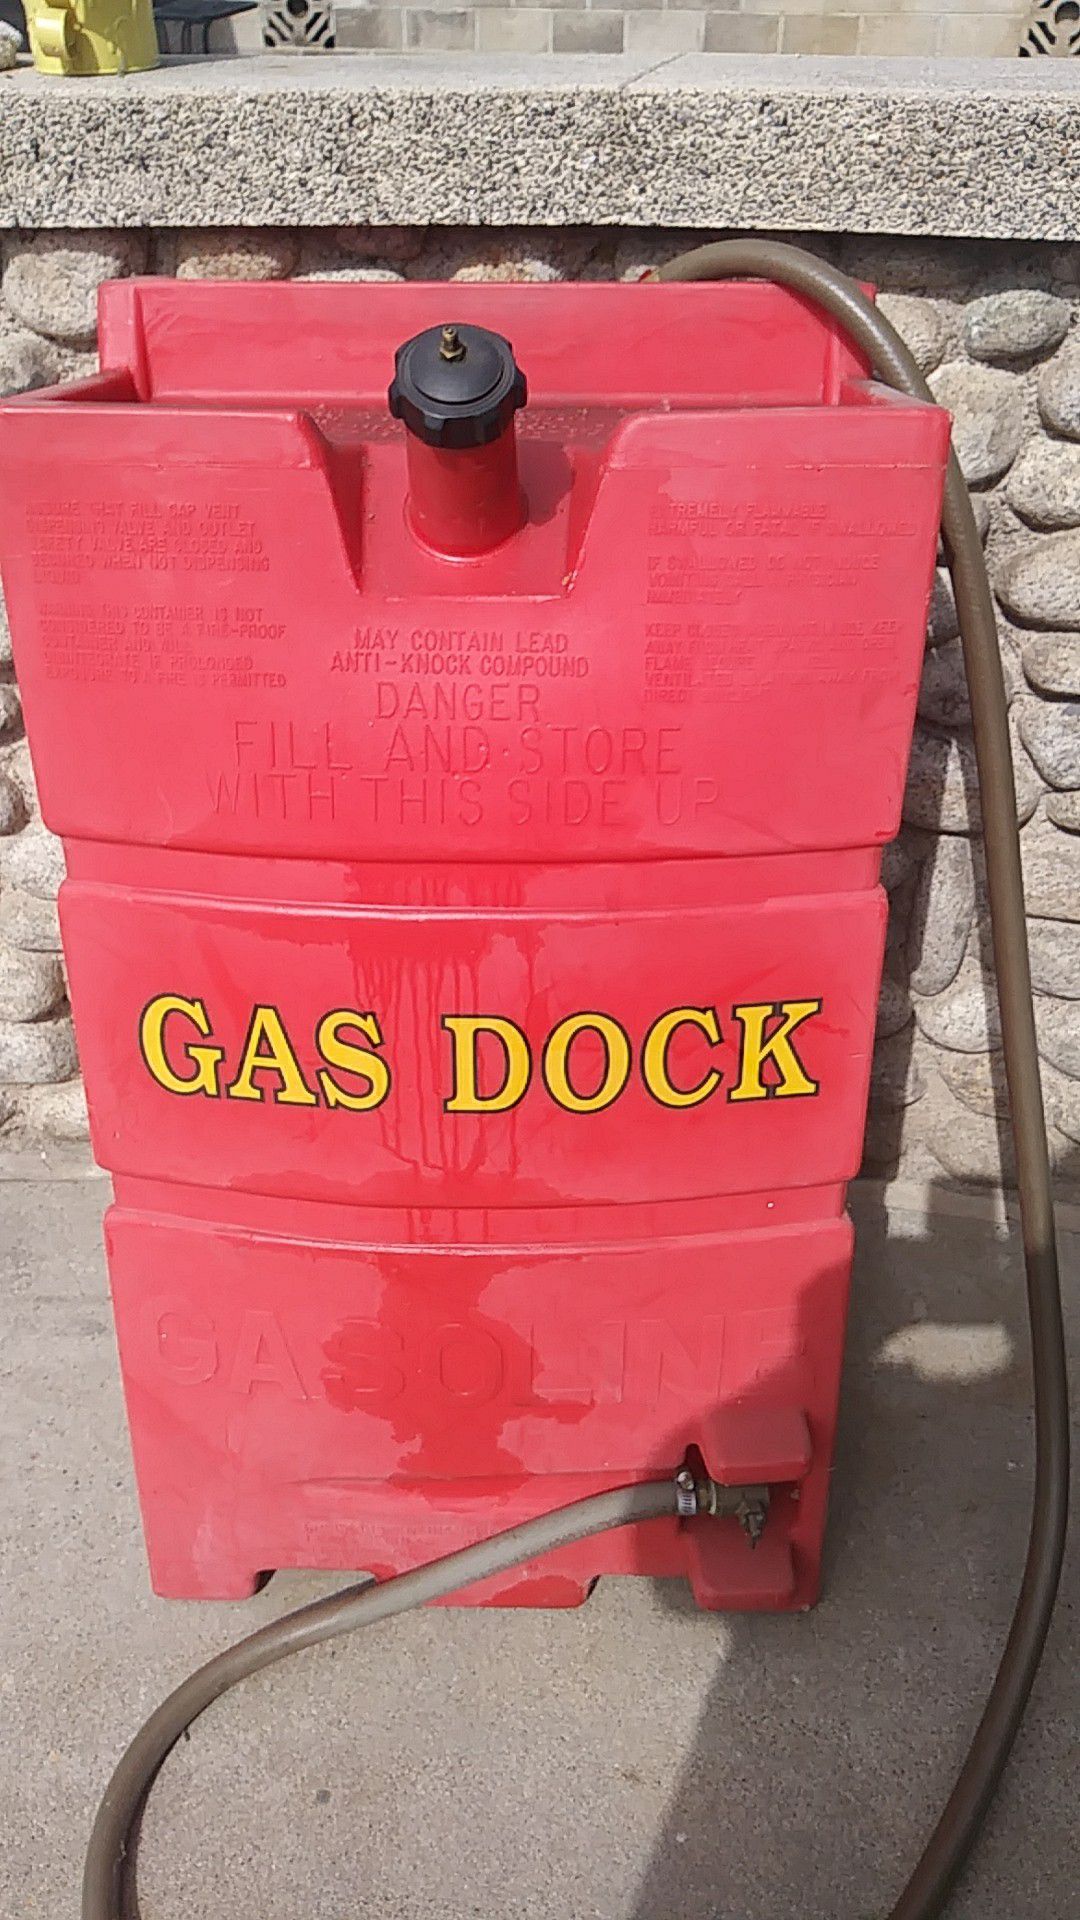 Gas dock